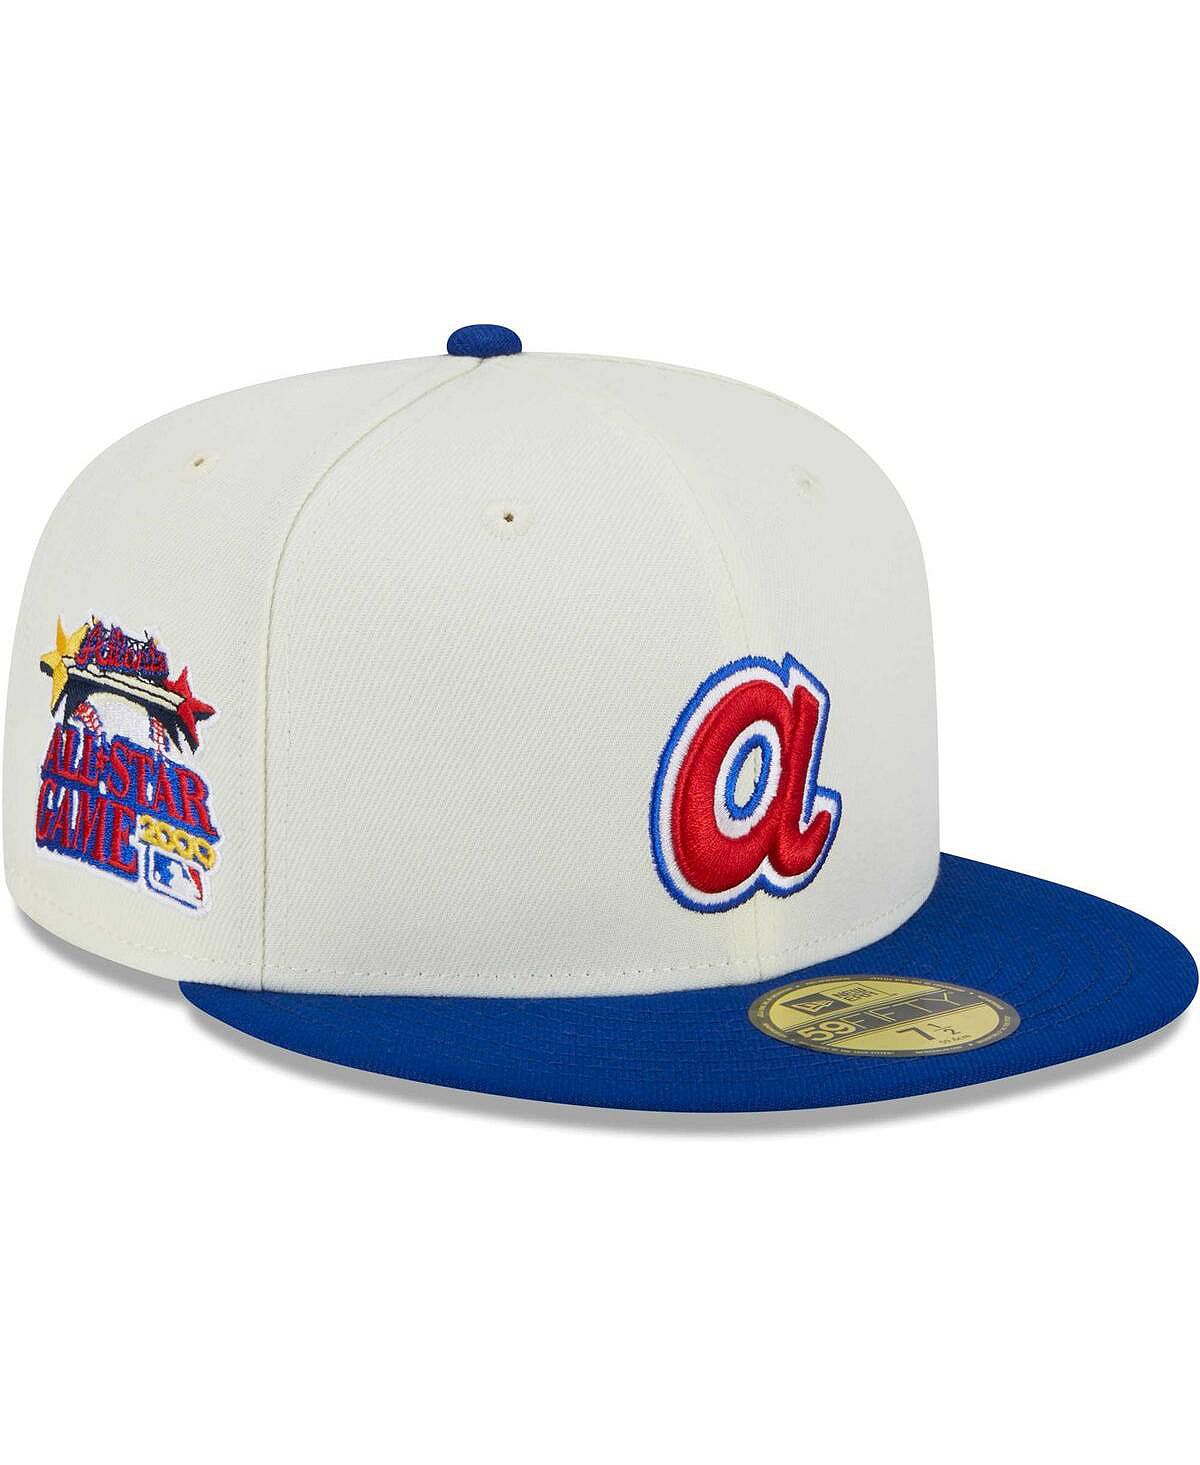 Мужская приталенная шляпа Stone, Royal Atlanta Braves Retro 59FIFTY New Era